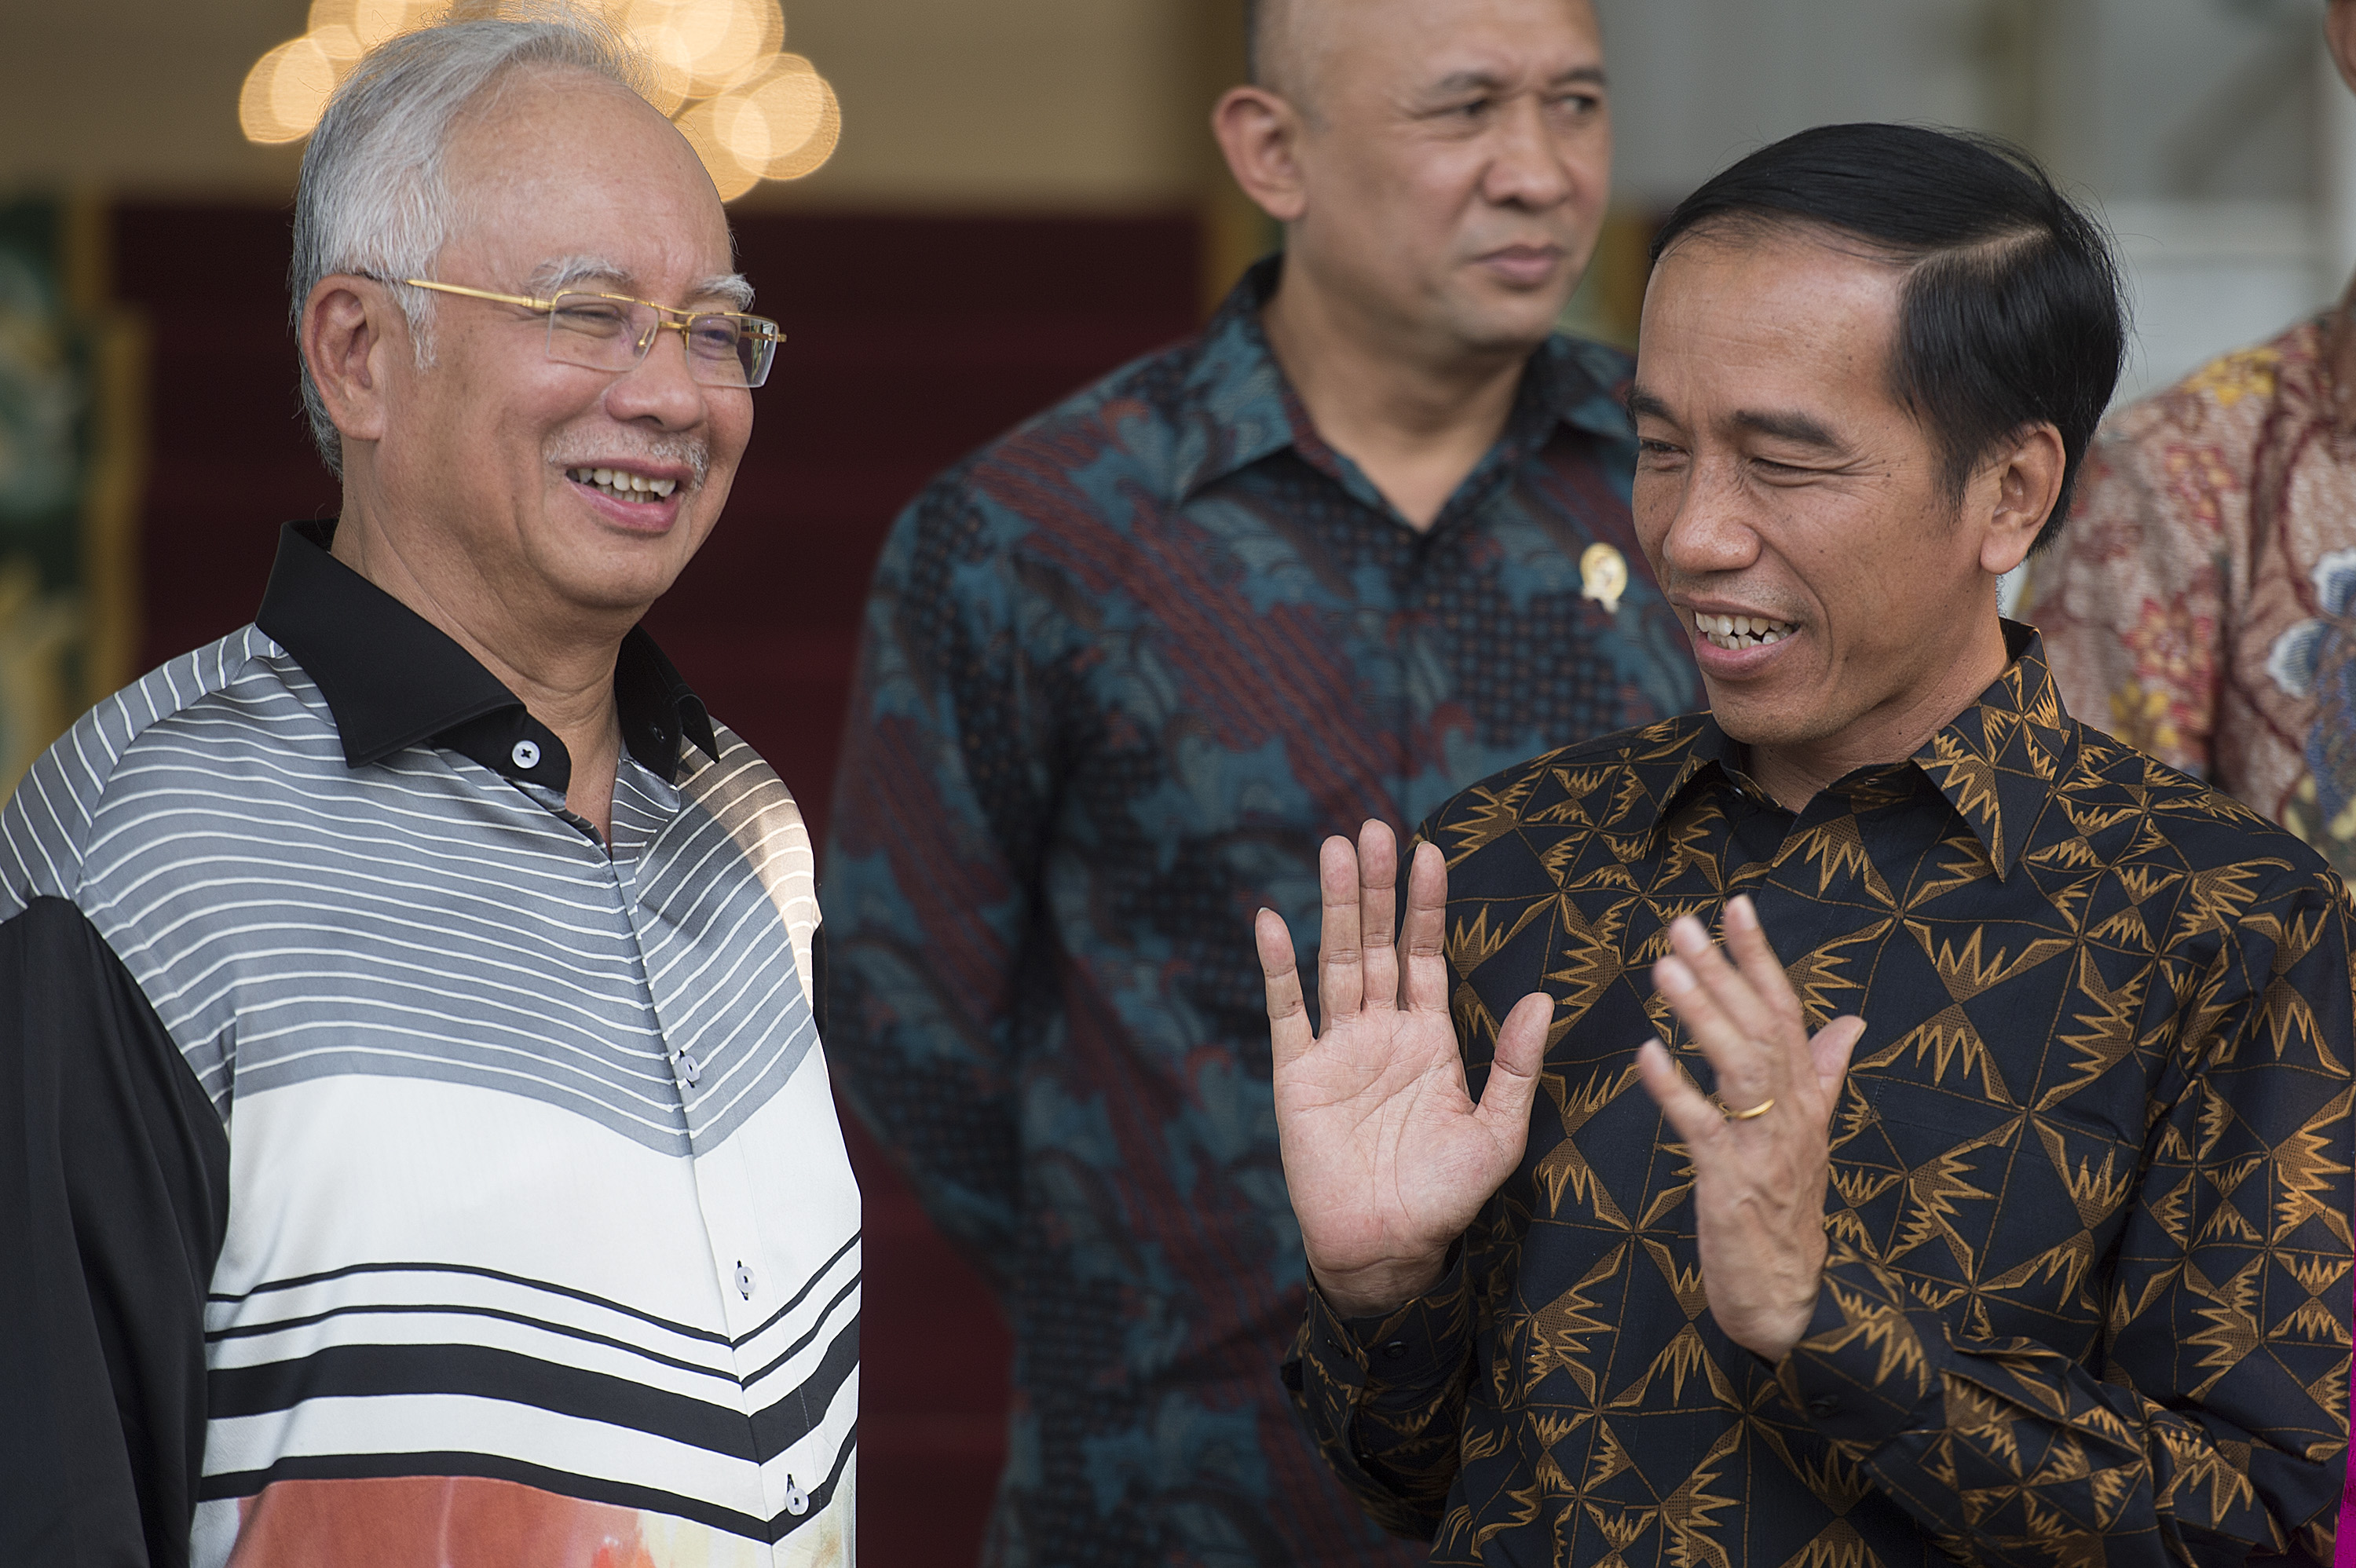 Presiden Joko Widodo (kanan) berbincang dengan PM Malaysia Datuk Seri Najib Tun Razak (kiri) di Istana Kepresidenan, Bogor, Jawa Barat, Minggu (11/10). Kedua pemimpin negara tersebut bertemu untuk menindaklanjuti peningkatan kerjasama bilateral di bidang industri minyak kelapa sawit dan lingkungan hidup. ANTARA FOTO/Widodo S. Jusuf.